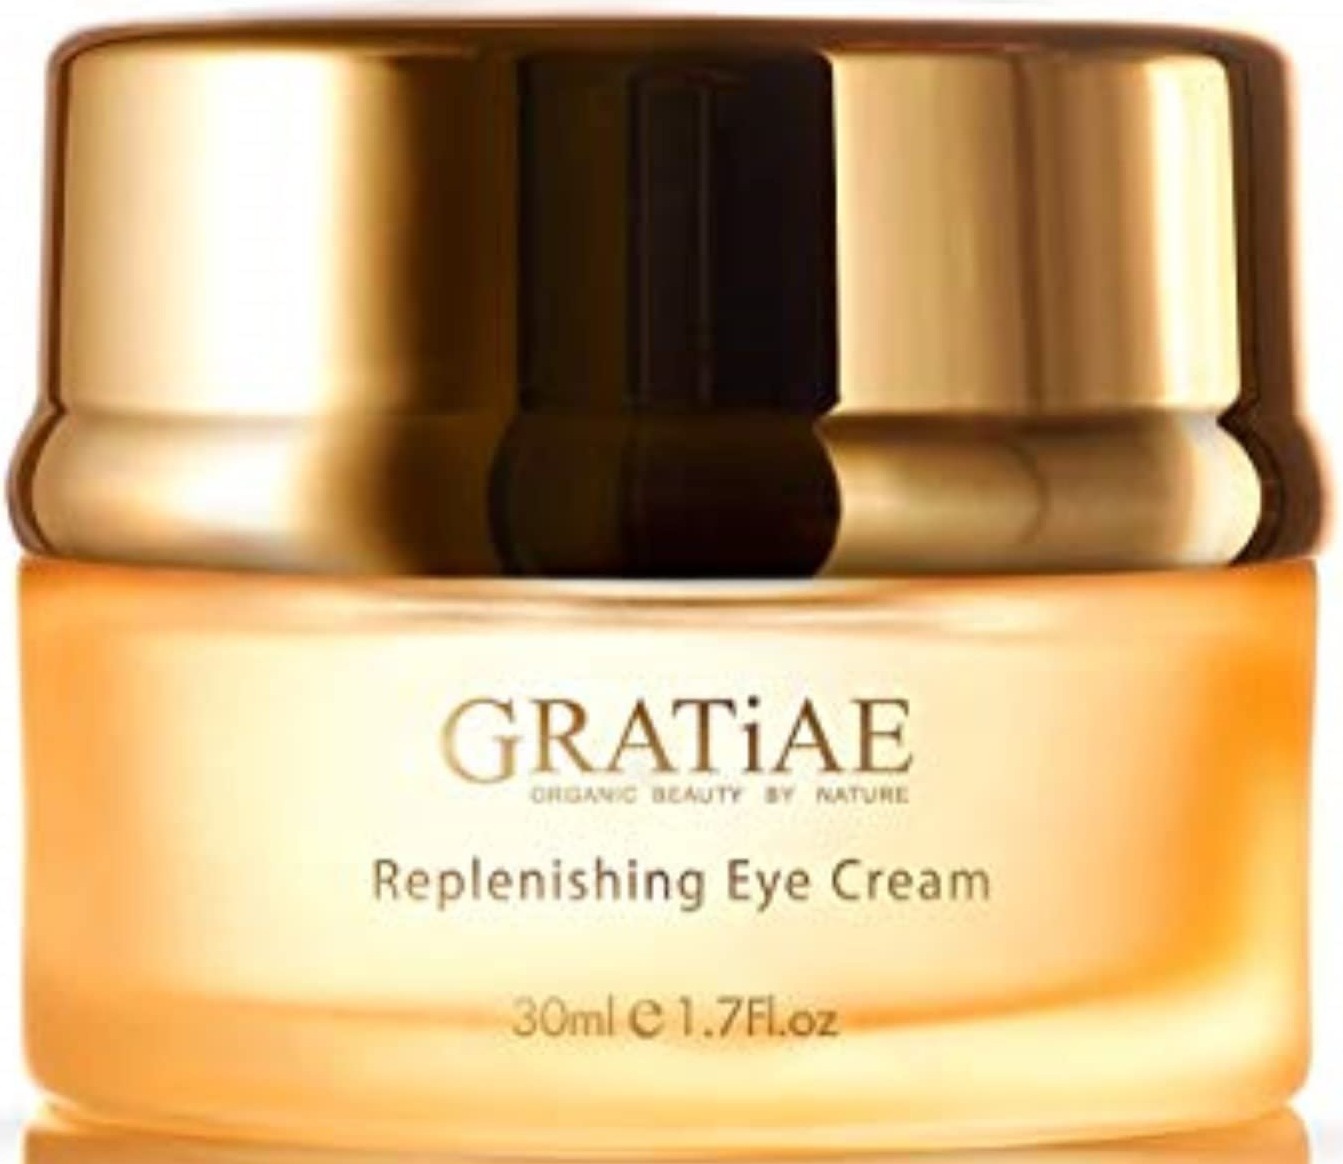 GRATiAE Replenishing Eye Cream